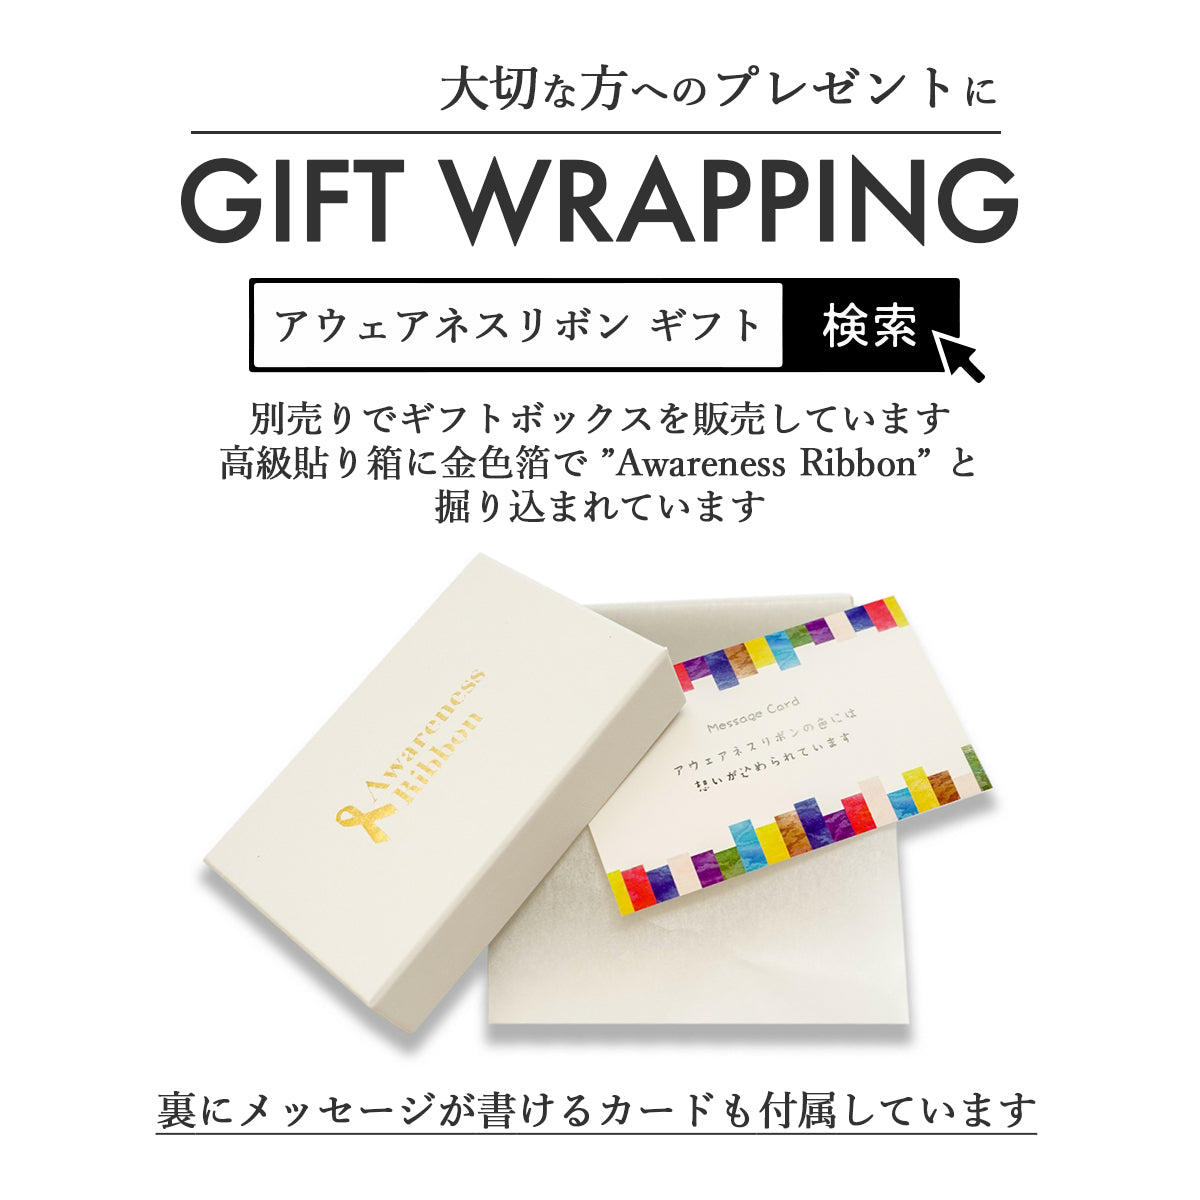 アウェアネスリボン ギフト ボックス Gift Box 高級貼り箱 メッセージカード付き